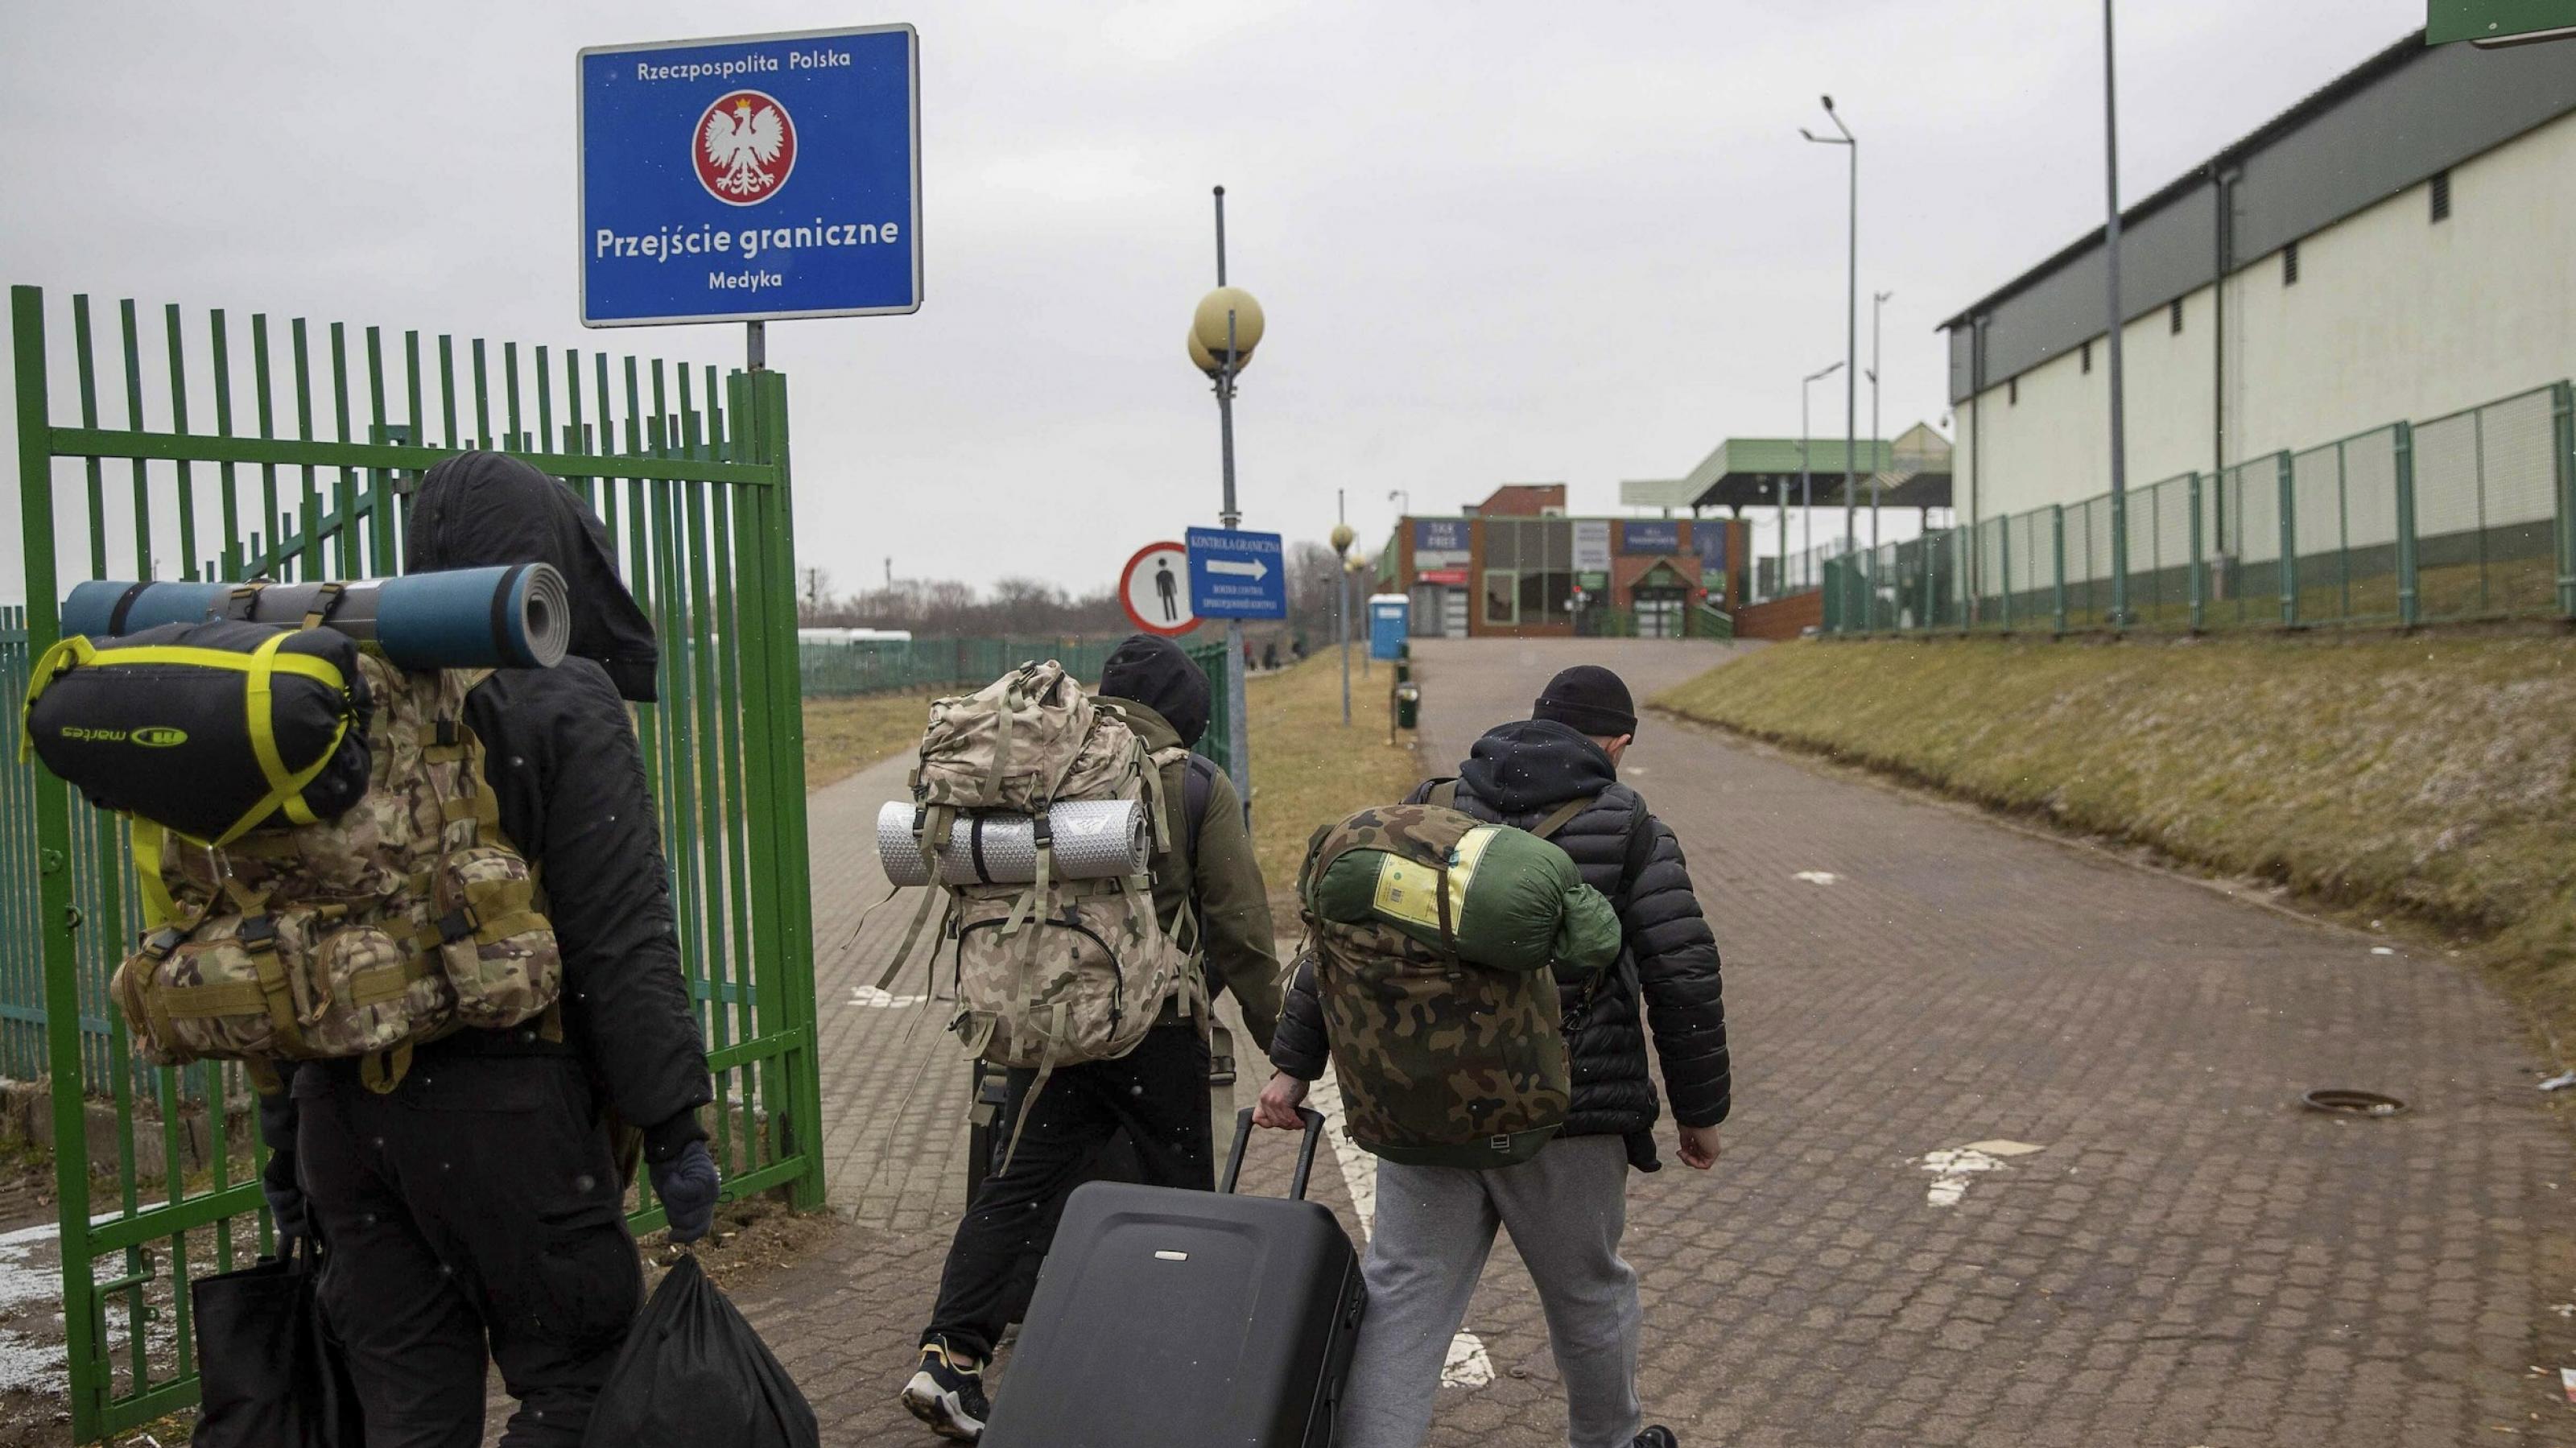 Drei Männer mit Rucksäcken und Koffern von hinten gesehen in einer Grenzanlage, die man an einem Schild mit dem polnischen Hoheitszeichen erkennt.